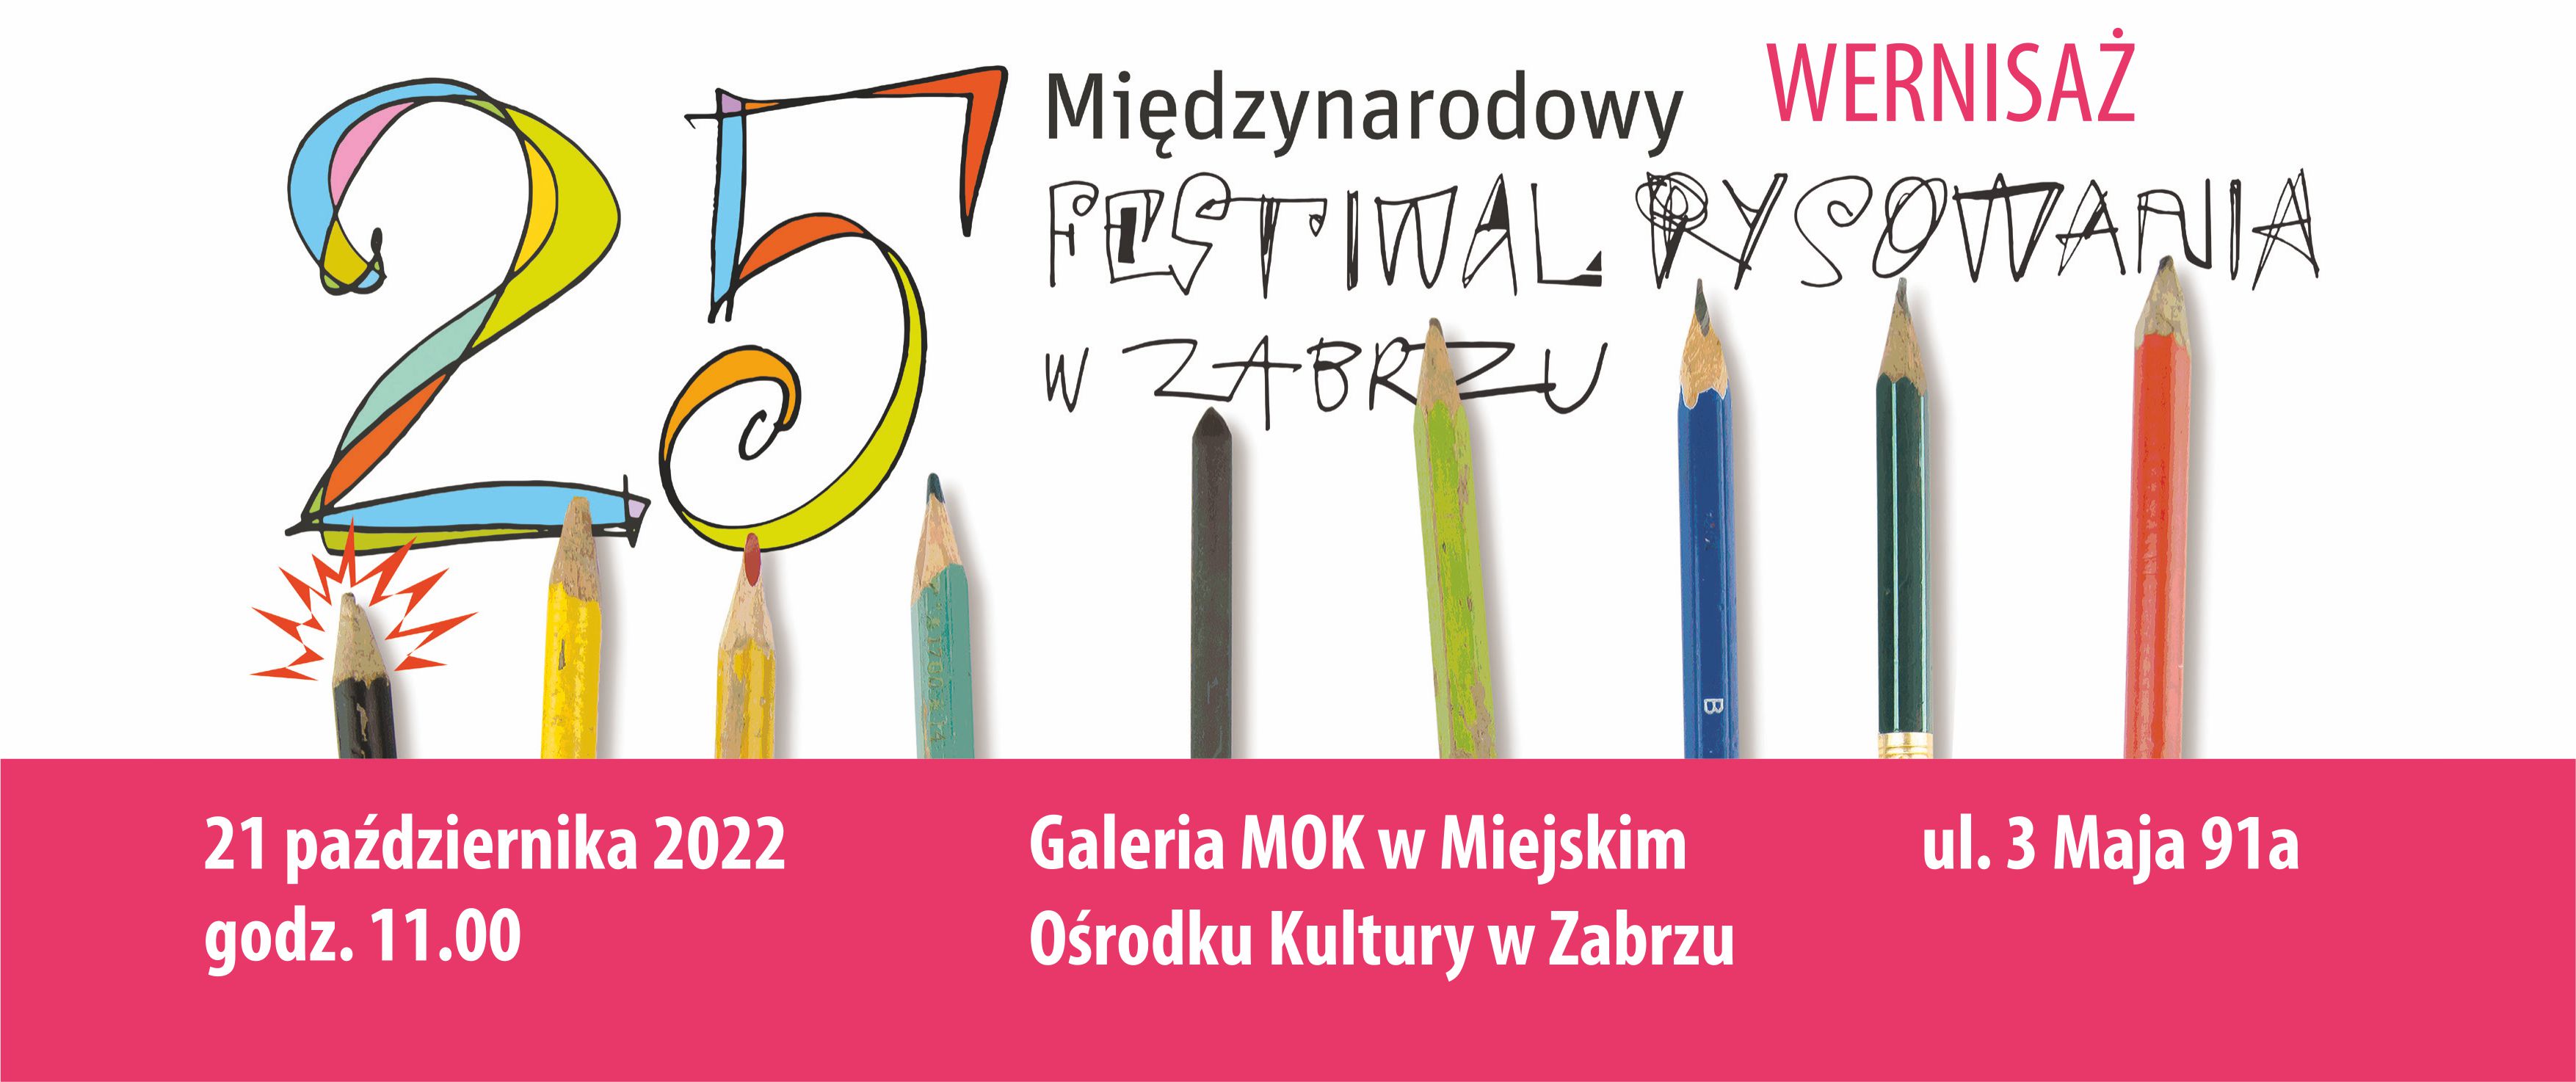 25 międzynarodowy festiwal rysowania, kredki, ołówki, baner